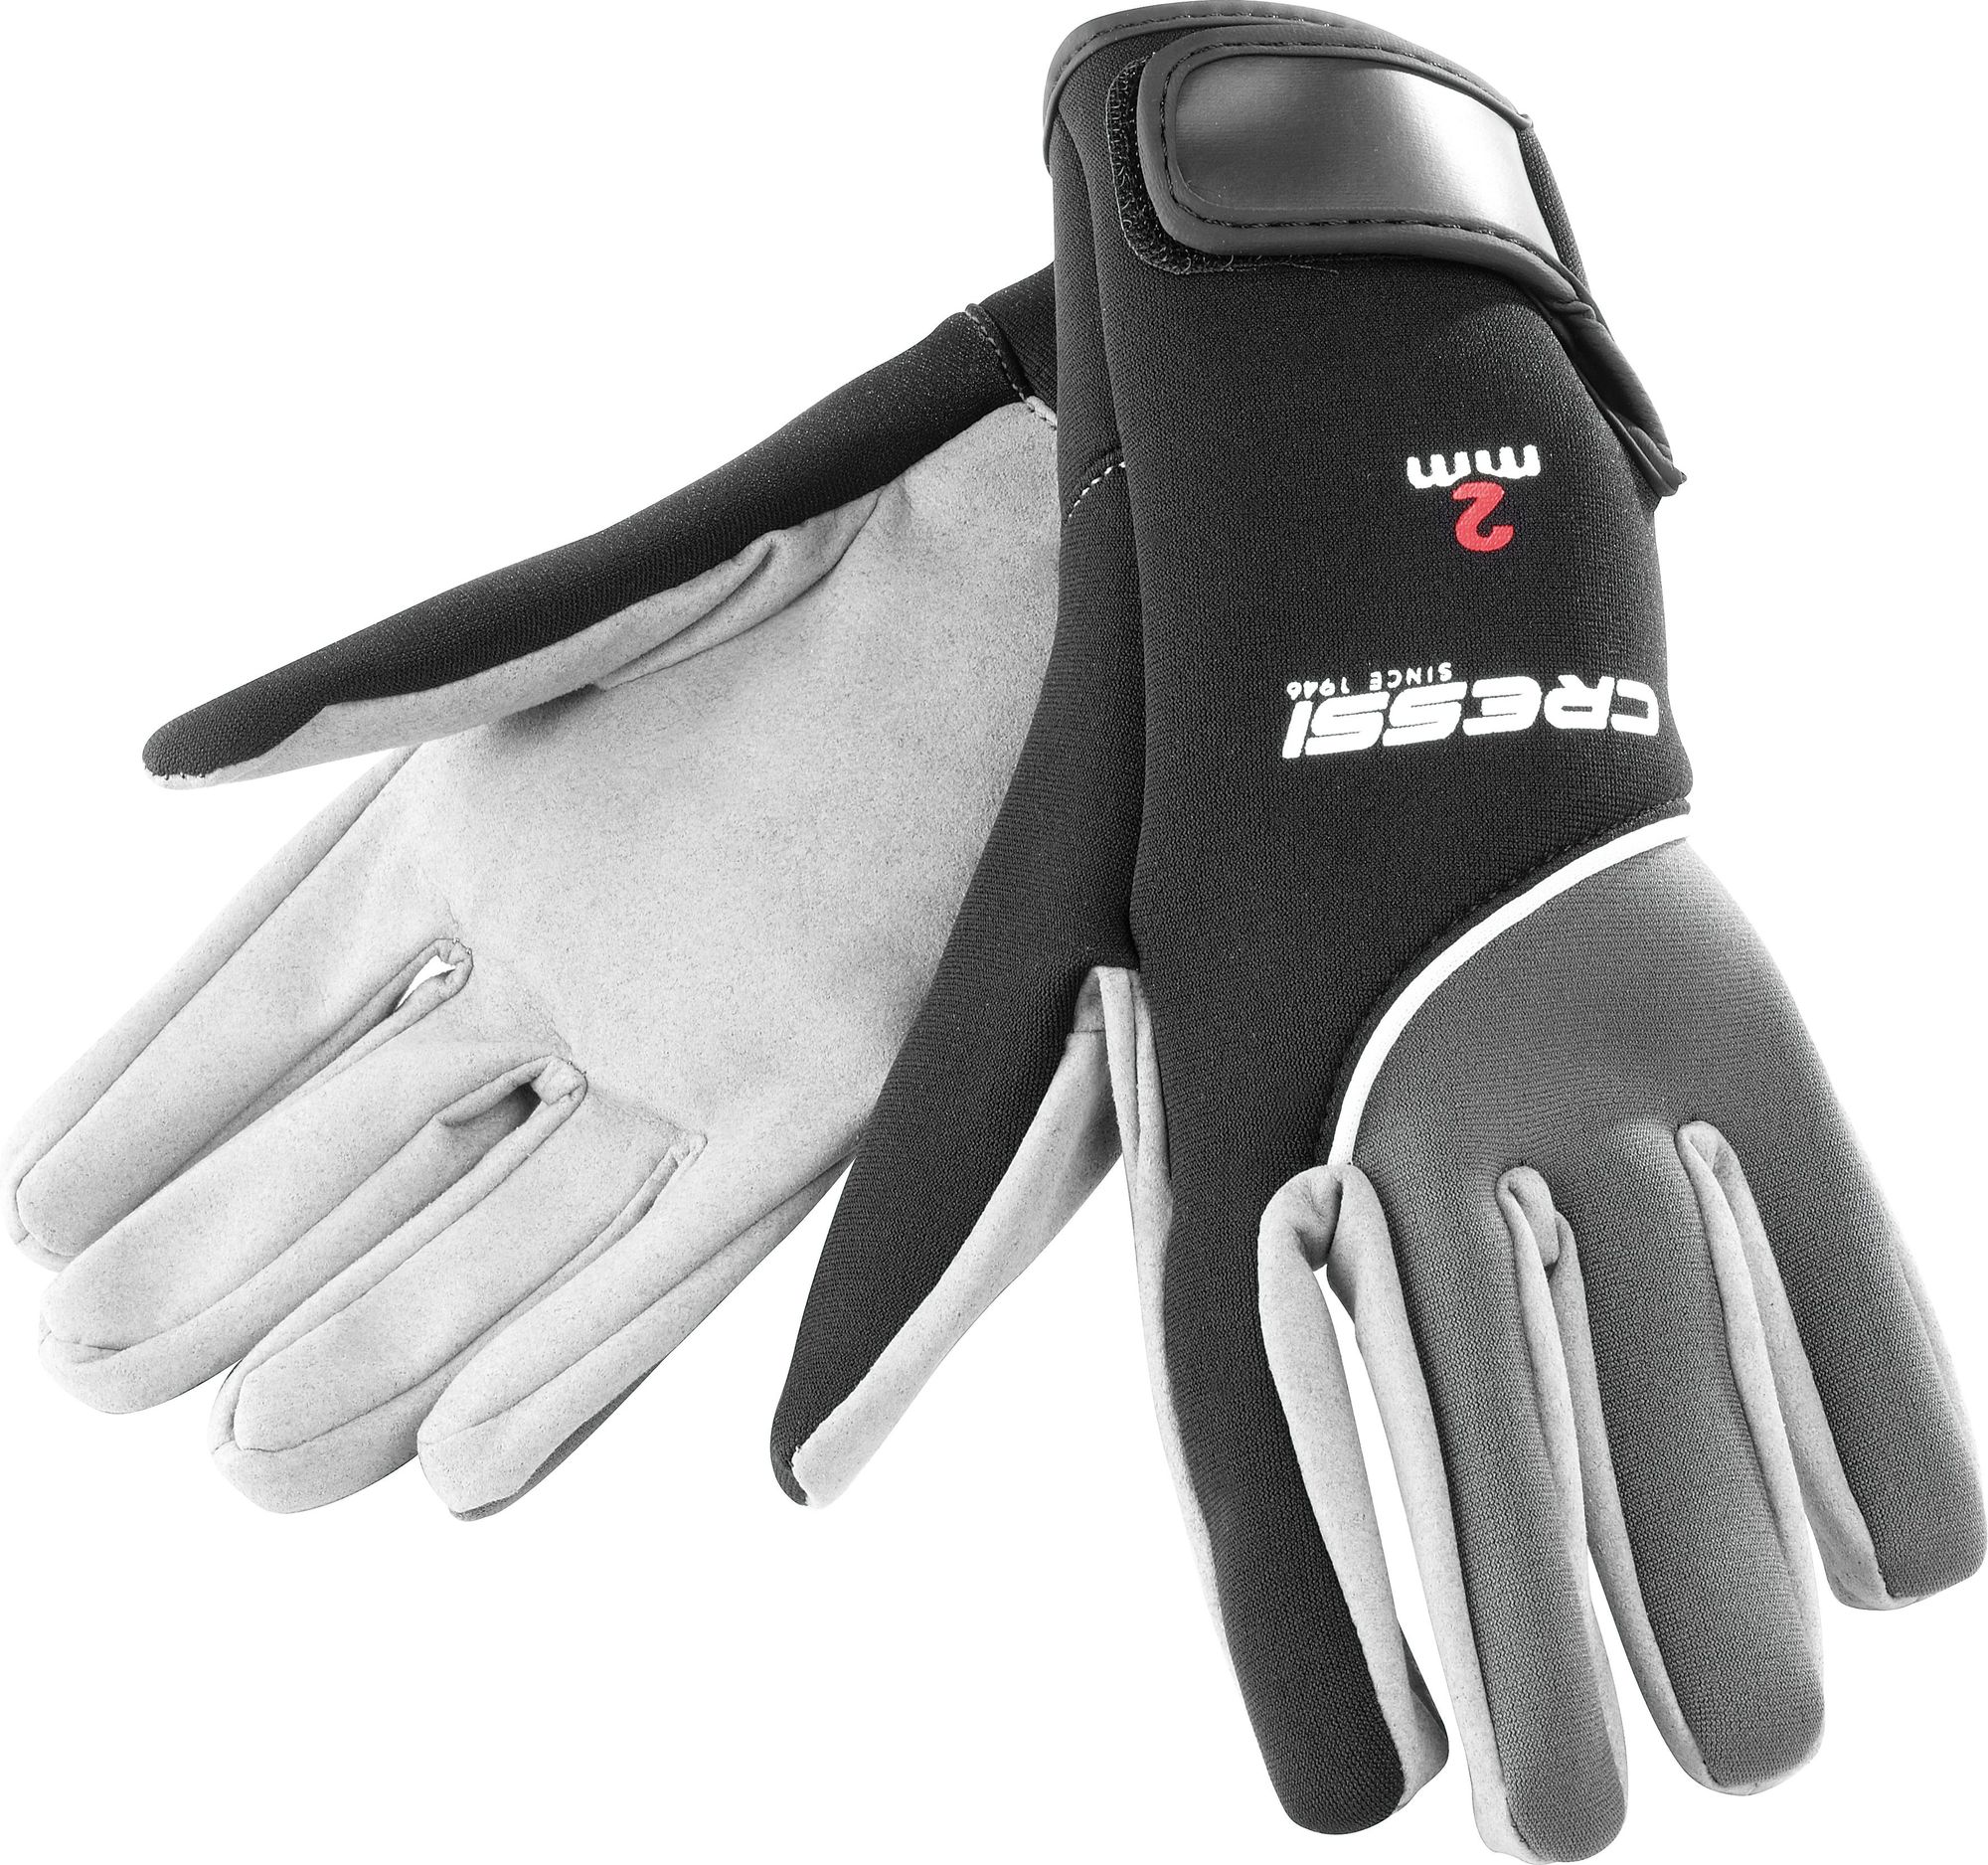 Cressi Tropical Gloves guanti immersion subacque mut abbigliamento scuba diving neoprene wetsuit accessor gloves